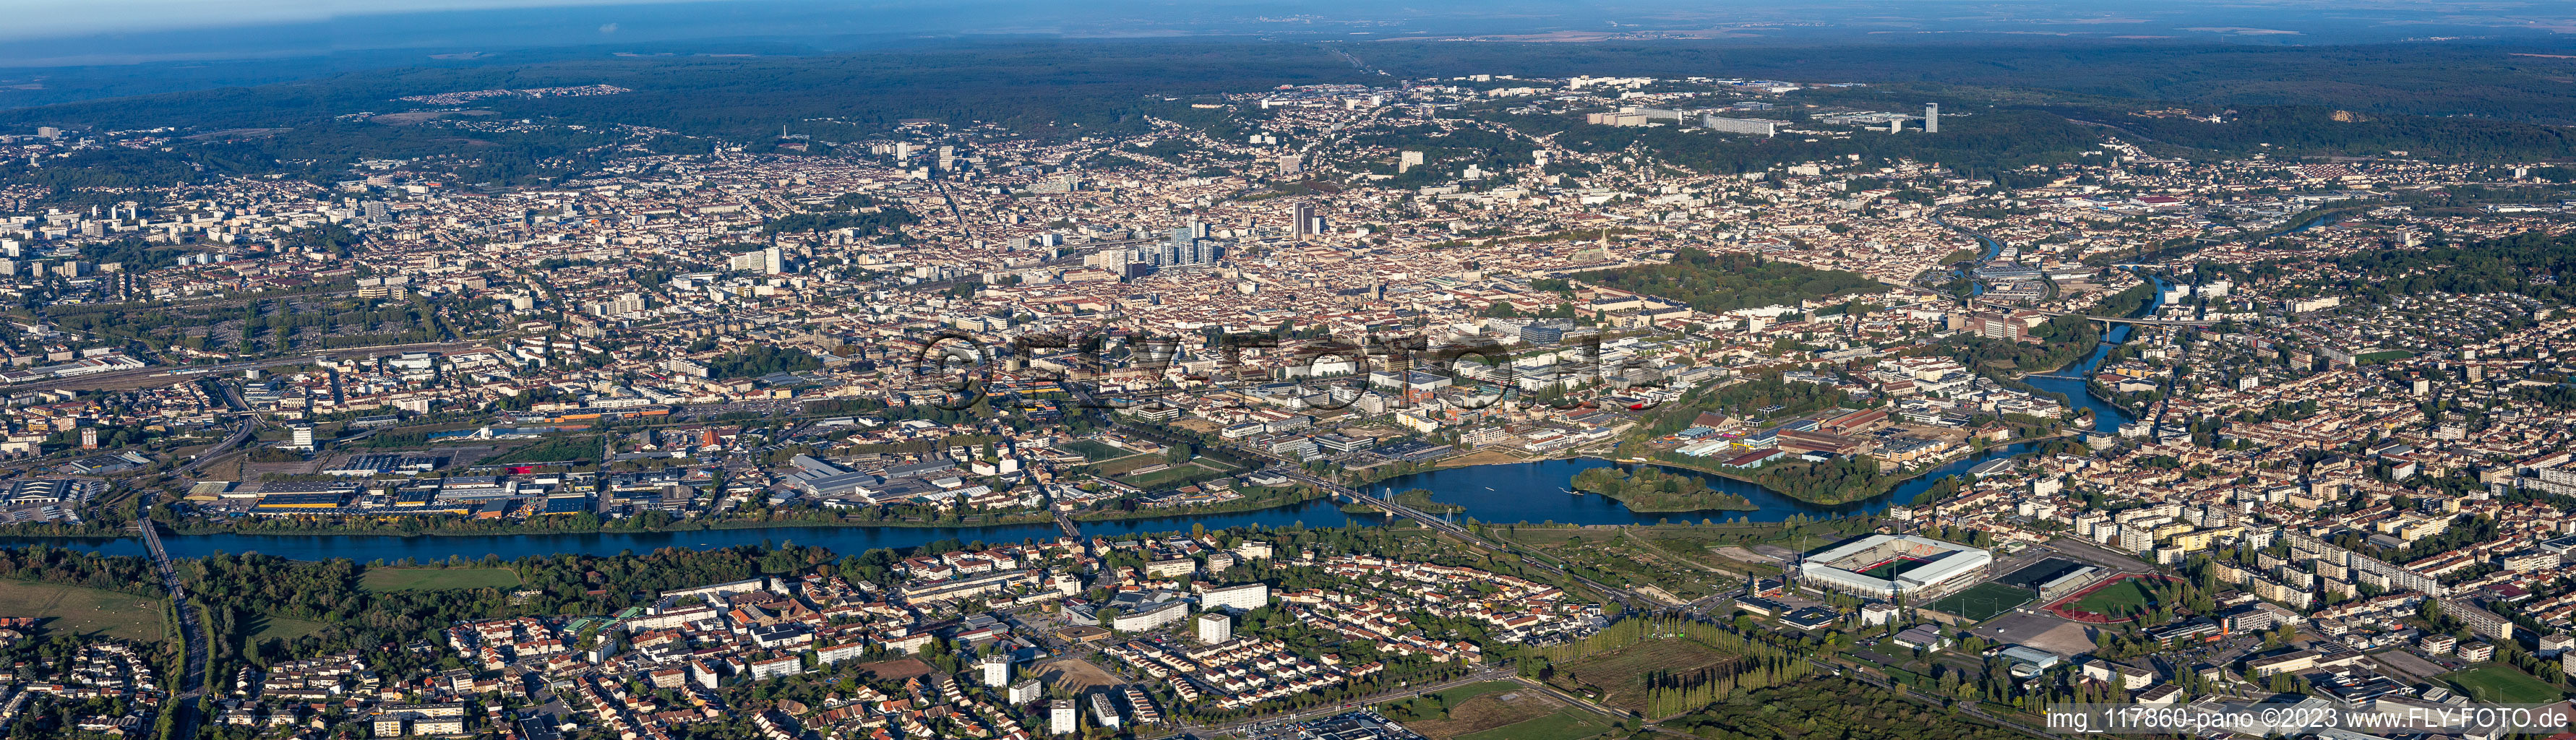 Luftbild von Panoramaperspektive des Stadtgebiet mit Außenbezirken und Innenstadtbereich in Nancy in Grand Est im Bundesland Meurthe-et-Moselle, Frankreich